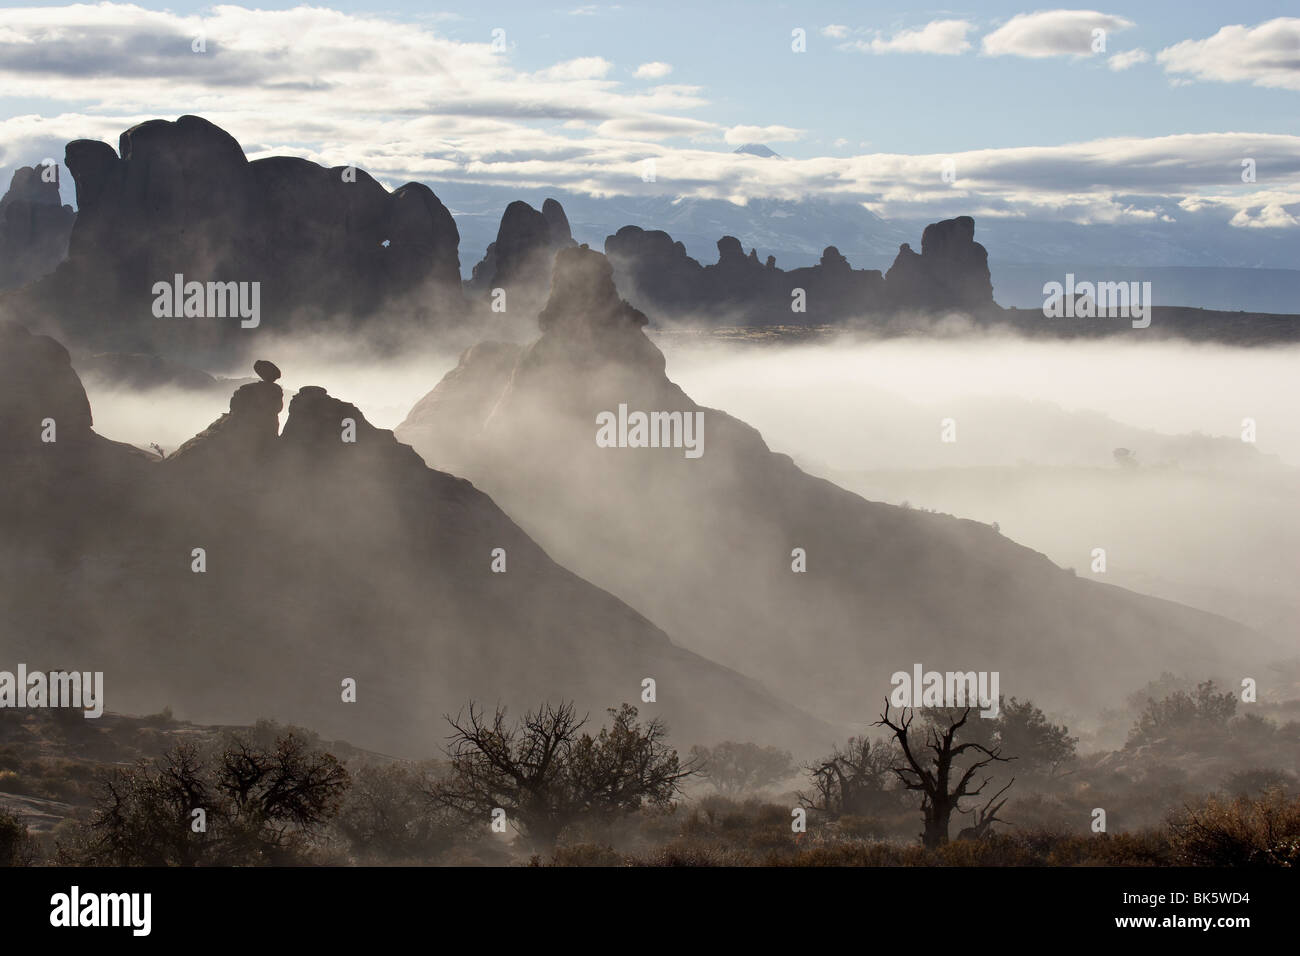 La nebbia che circonda le formazioni, Arches National Park, Utah, Stati Uniti d'America, America del Nord Foto Stock